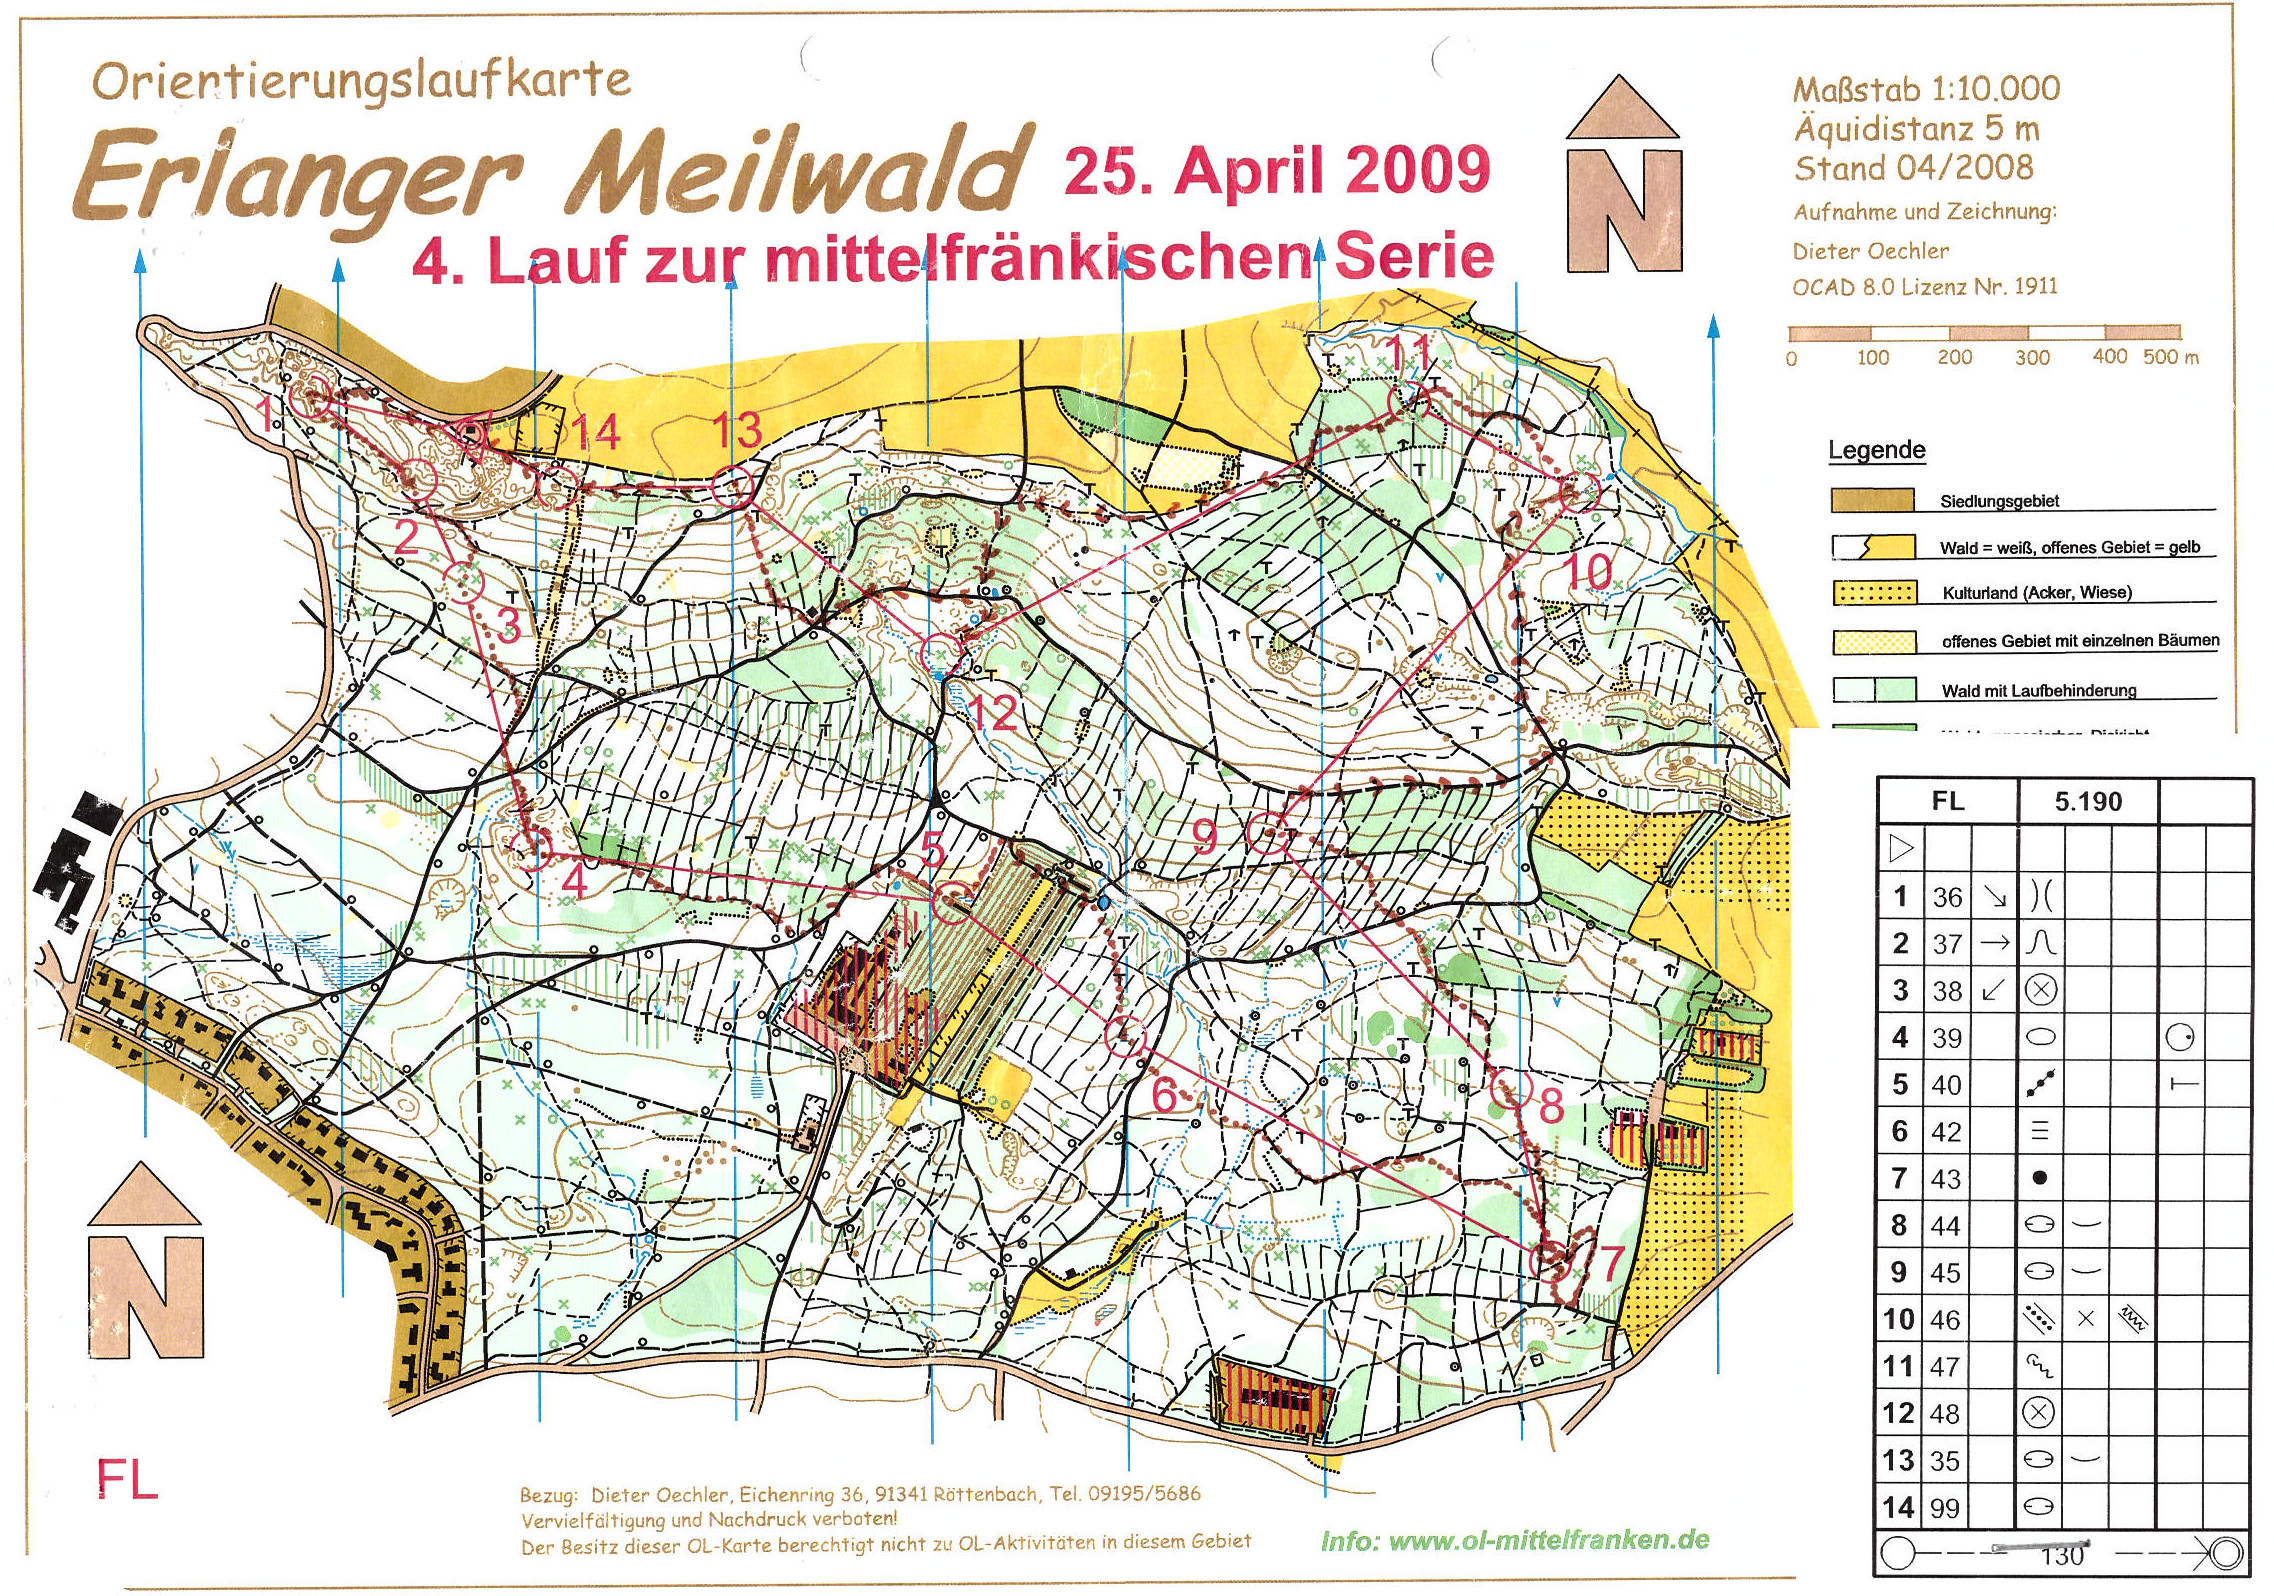 Mittelfranken-Serie 2009 Lauf 3 (25/04/2009)